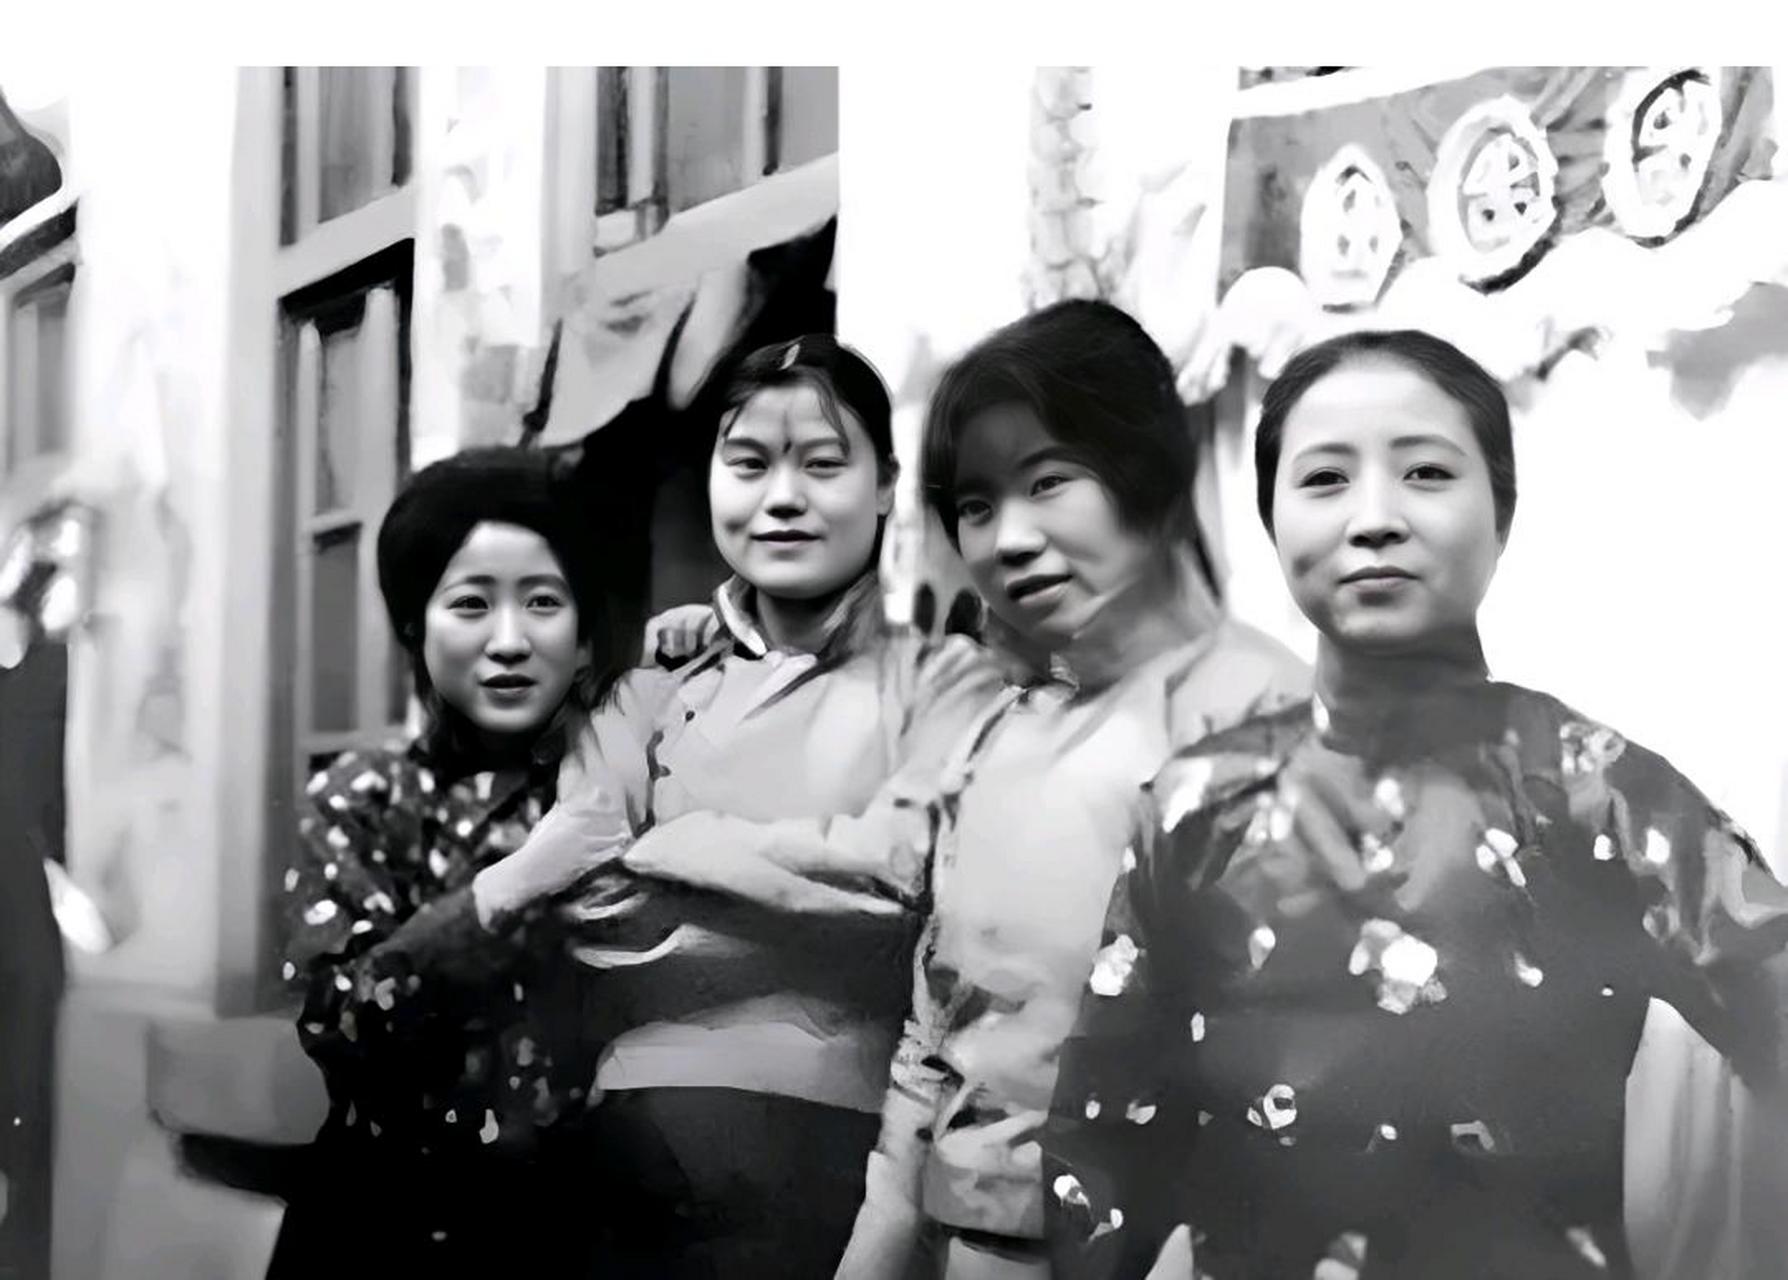 这是当年在北京八大胡同拍的照片,照片中漂亮的女子,身份有些尴尬